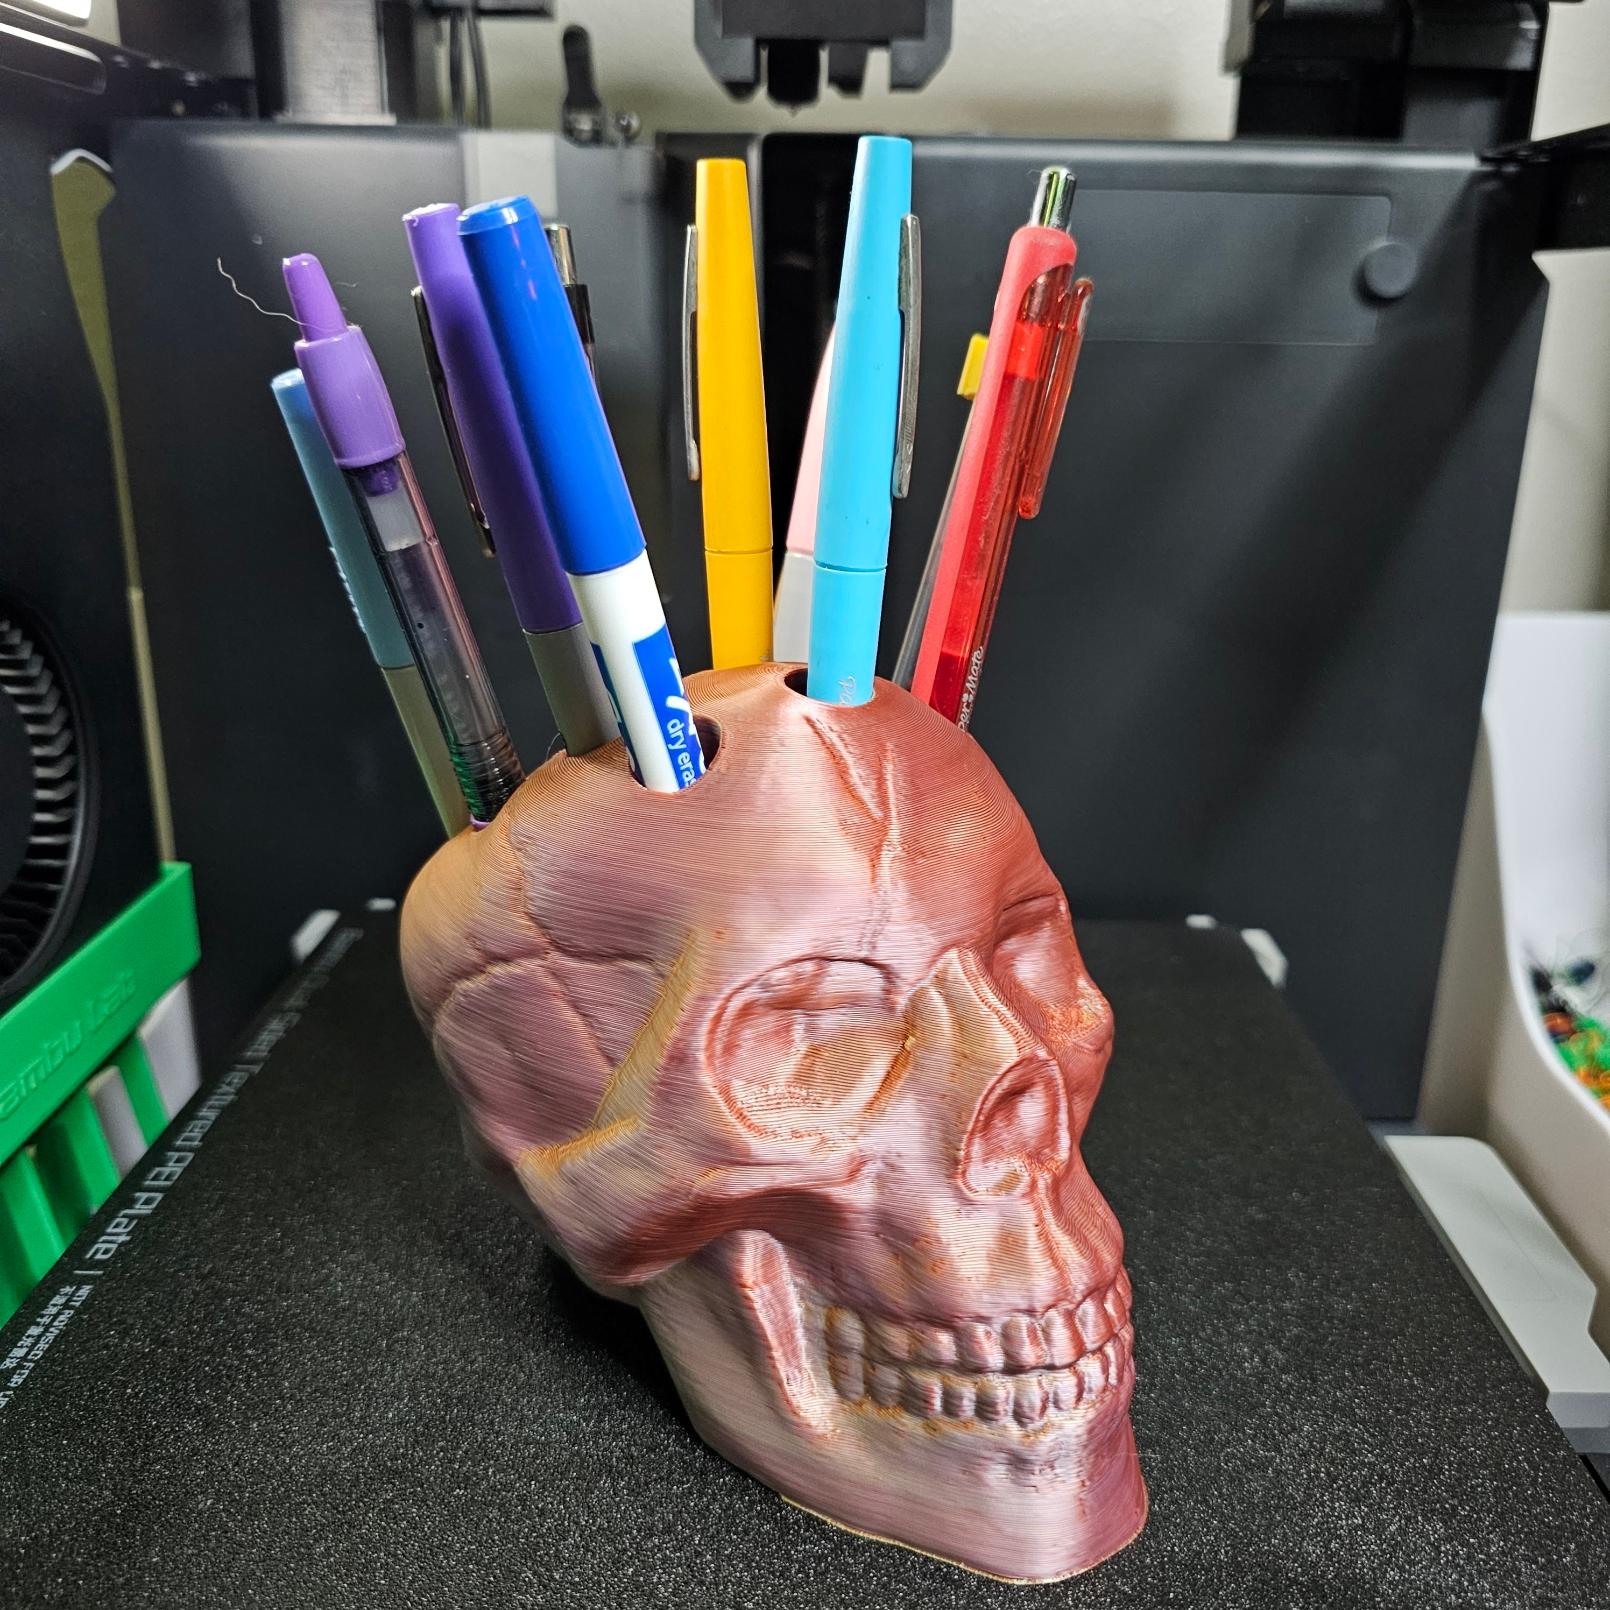 3D Printer Glue Stick holder for ender 3 v2 - 3D model by b1racy6kudp on  Thangs